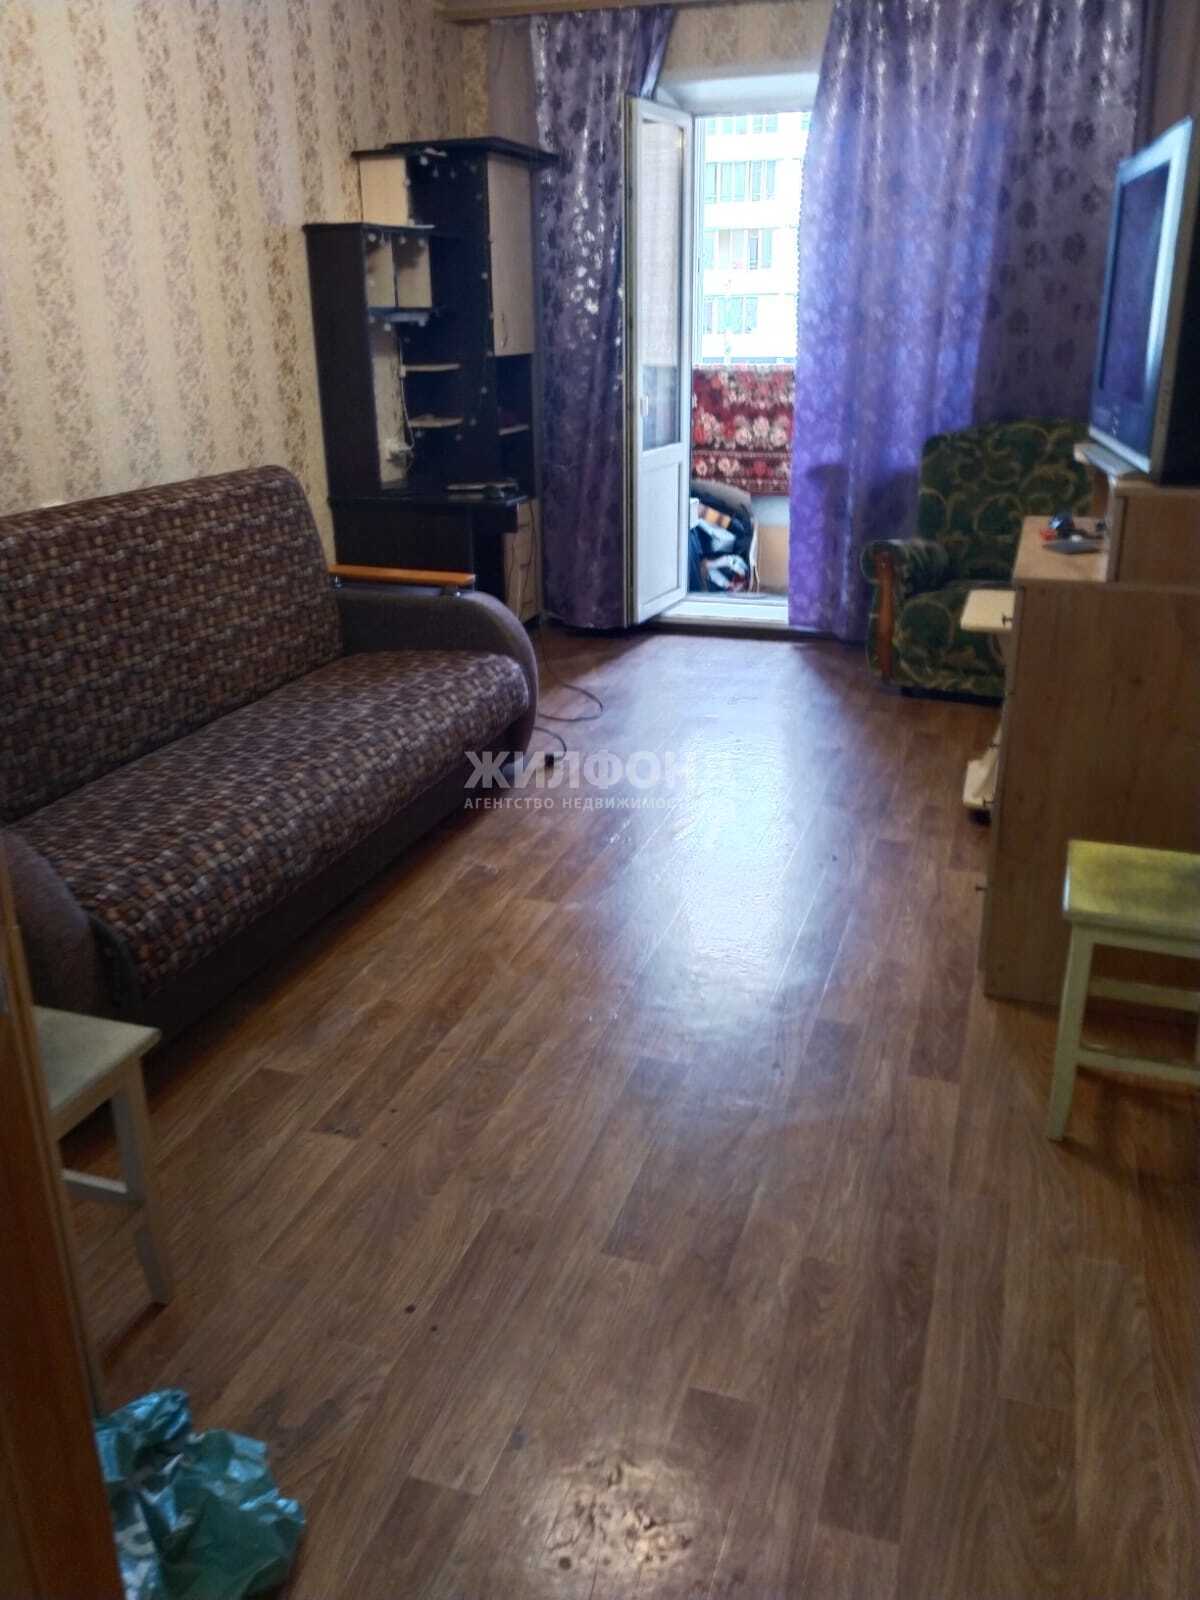 Квартира на ночь в новосибирске недорого с фото